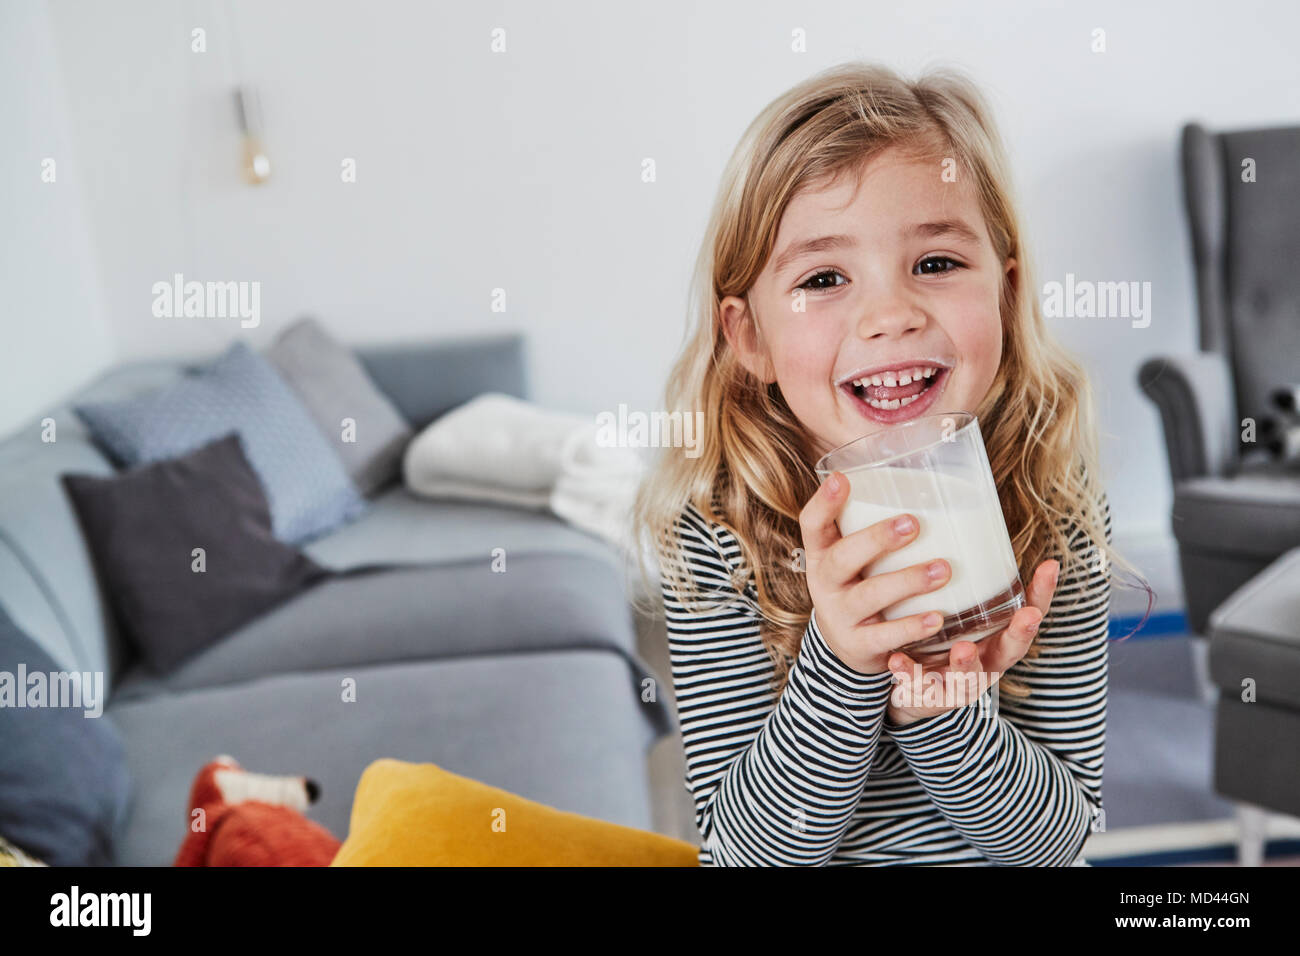 Porträt eines jungen Mädchens im Wohnzimmer, holding Glas Milch sitzen, lächeln Stockfoto